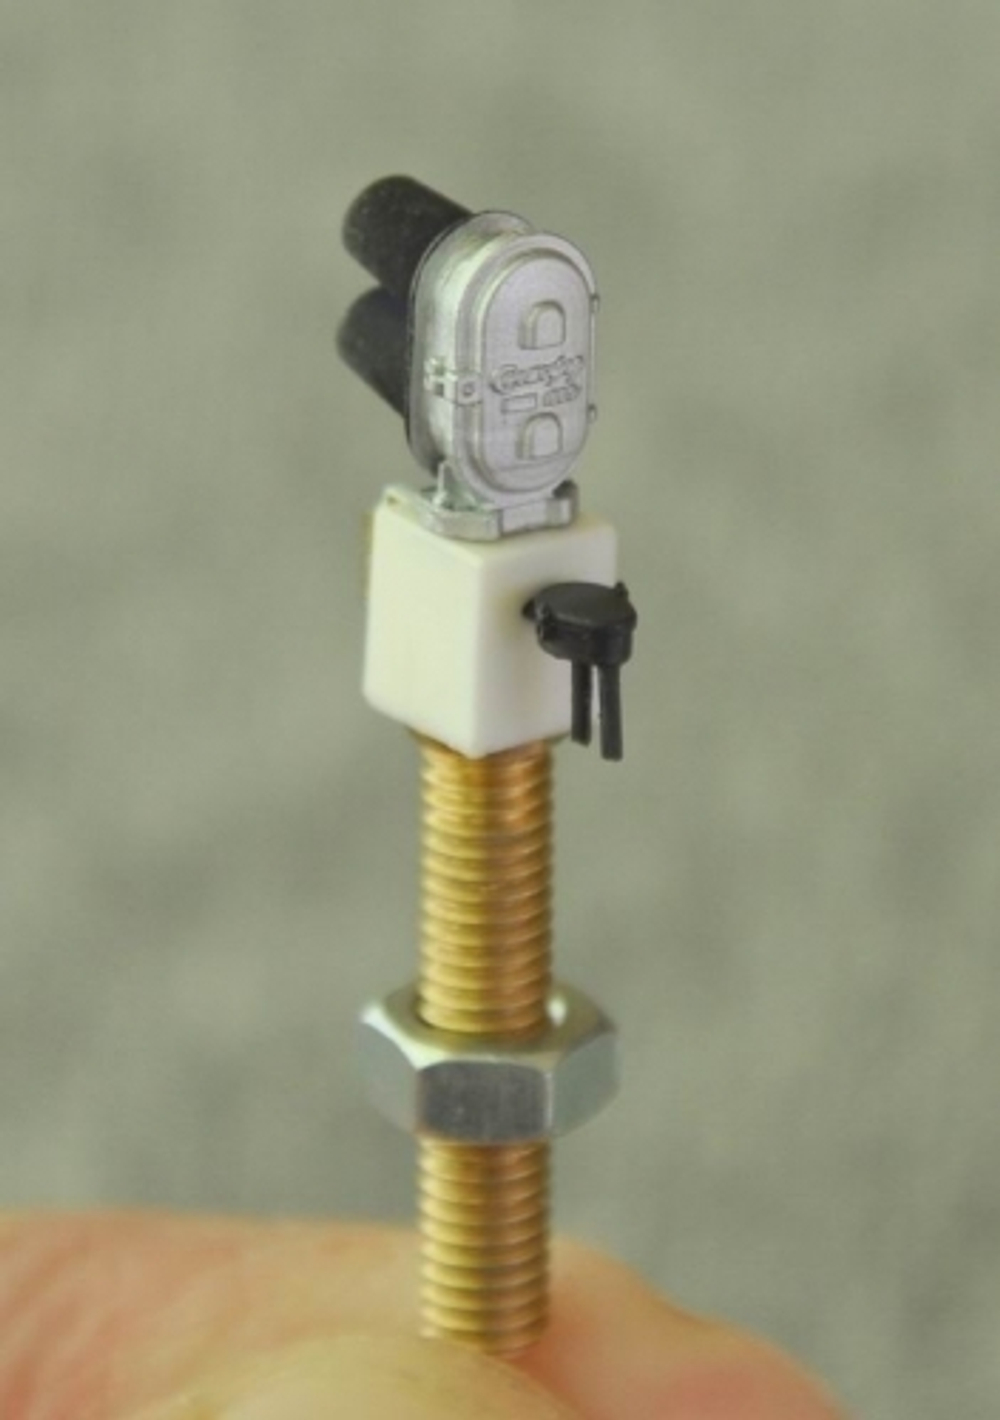 Светофор двузначный карликовый Тип БК (TT, 1:120)